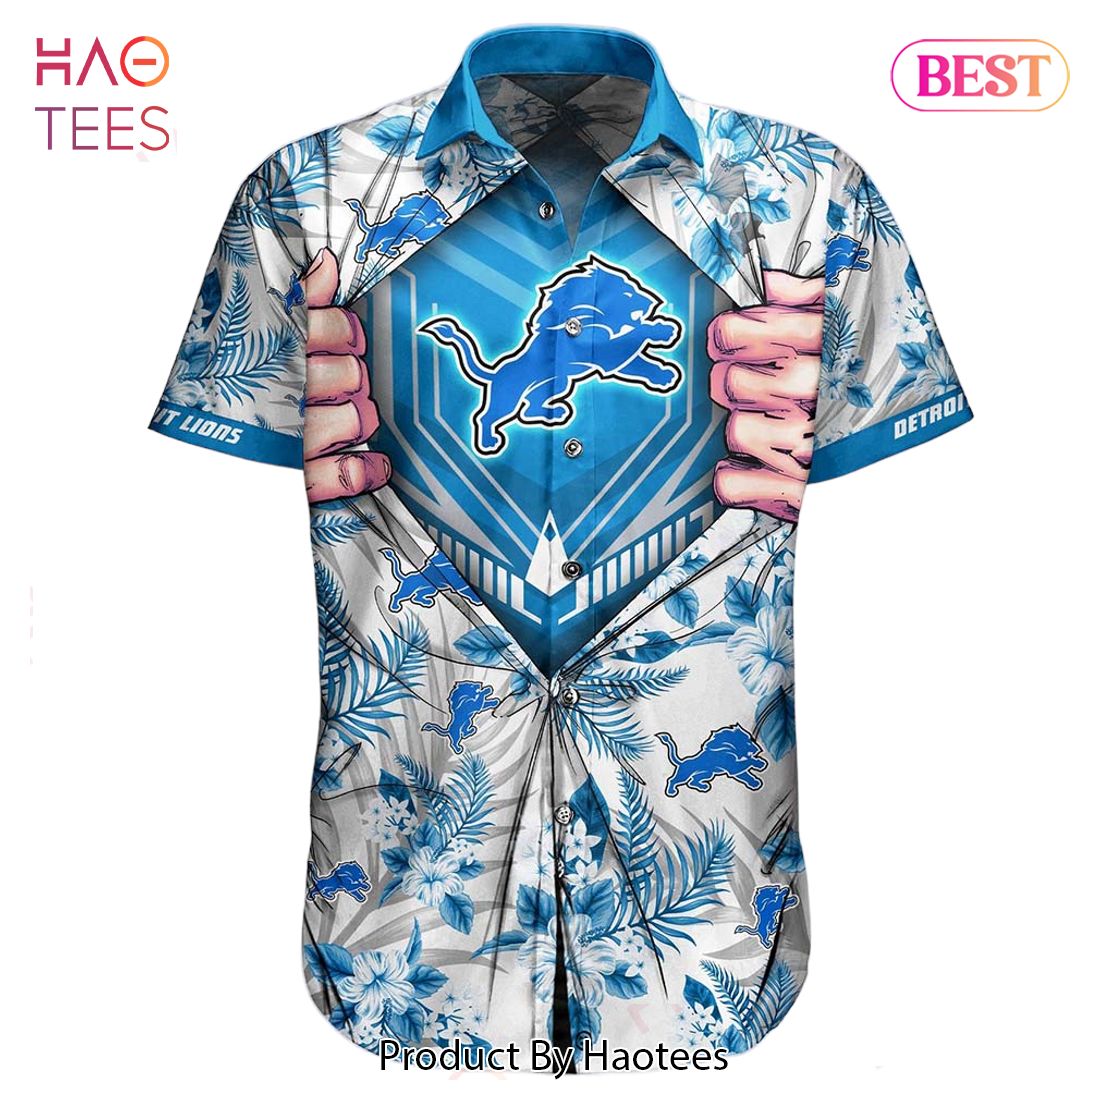 HOT TREND Detroit Lions NFL Football Hawaiian Shirt New Trends Summer For Big Fans Gift For Men Women